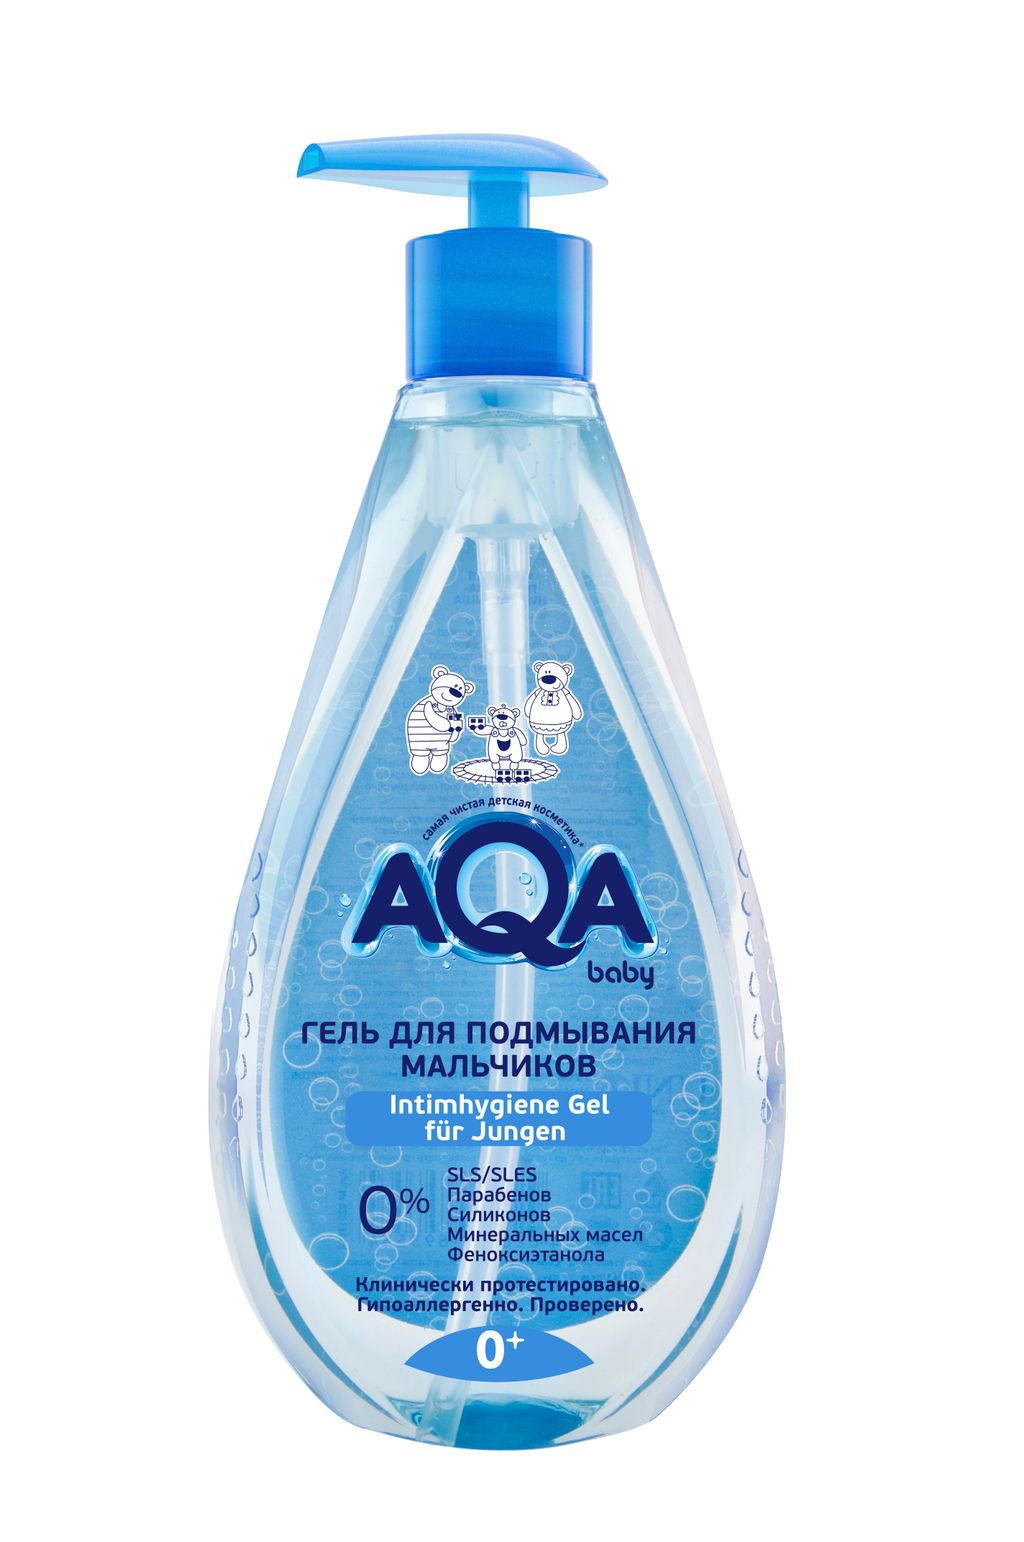 фото упаковки AQA baby гель для подмывания мальчиков